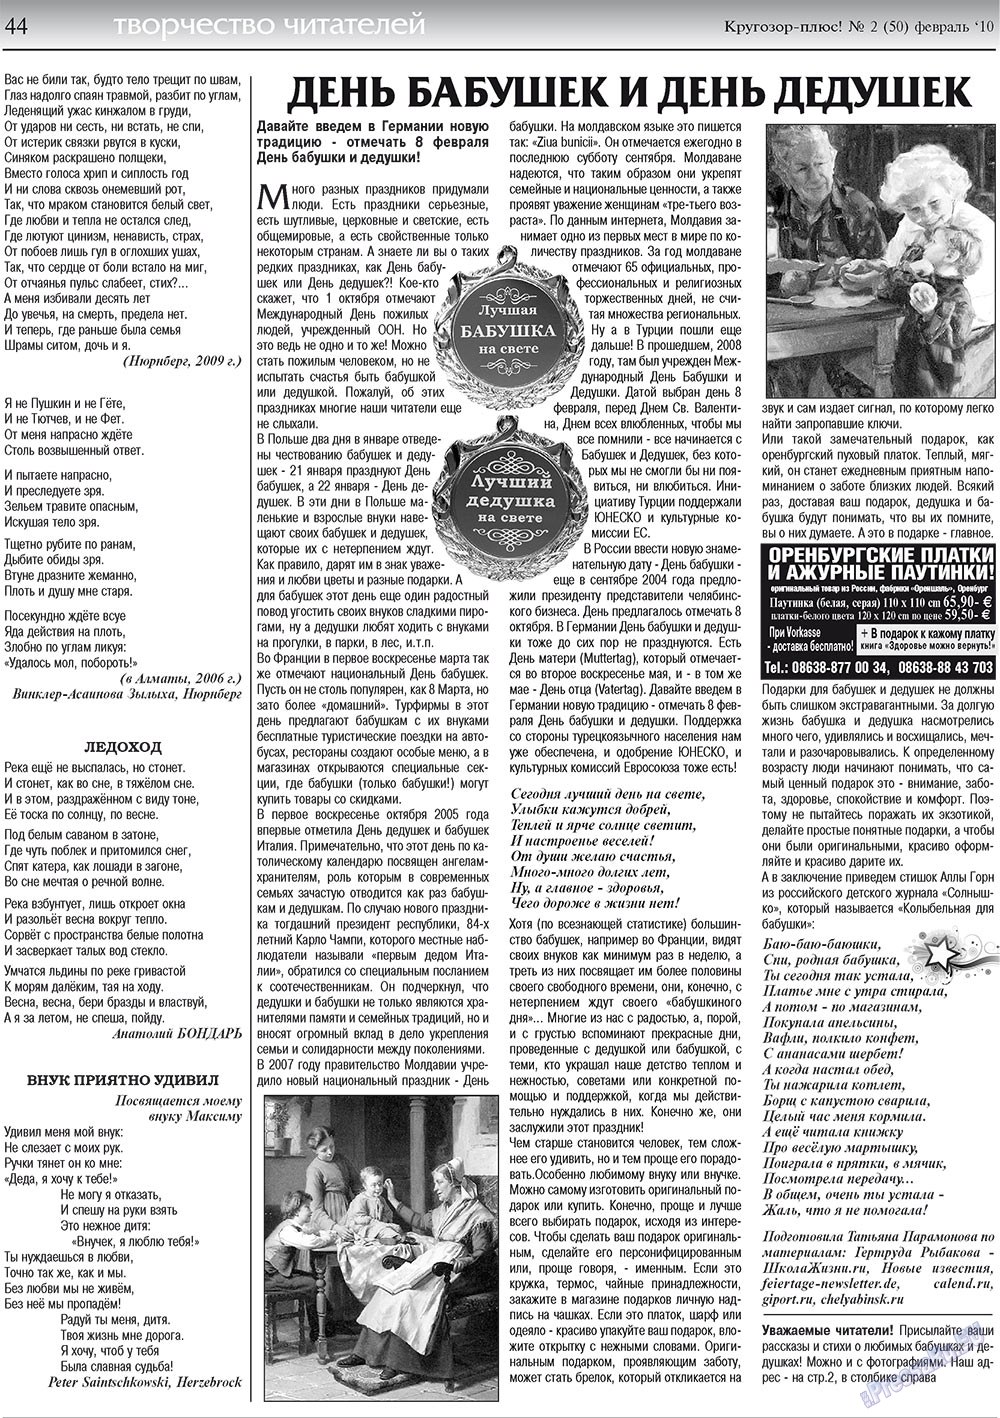 Кругозор плюс!, газета. 2010 №2 стр.44